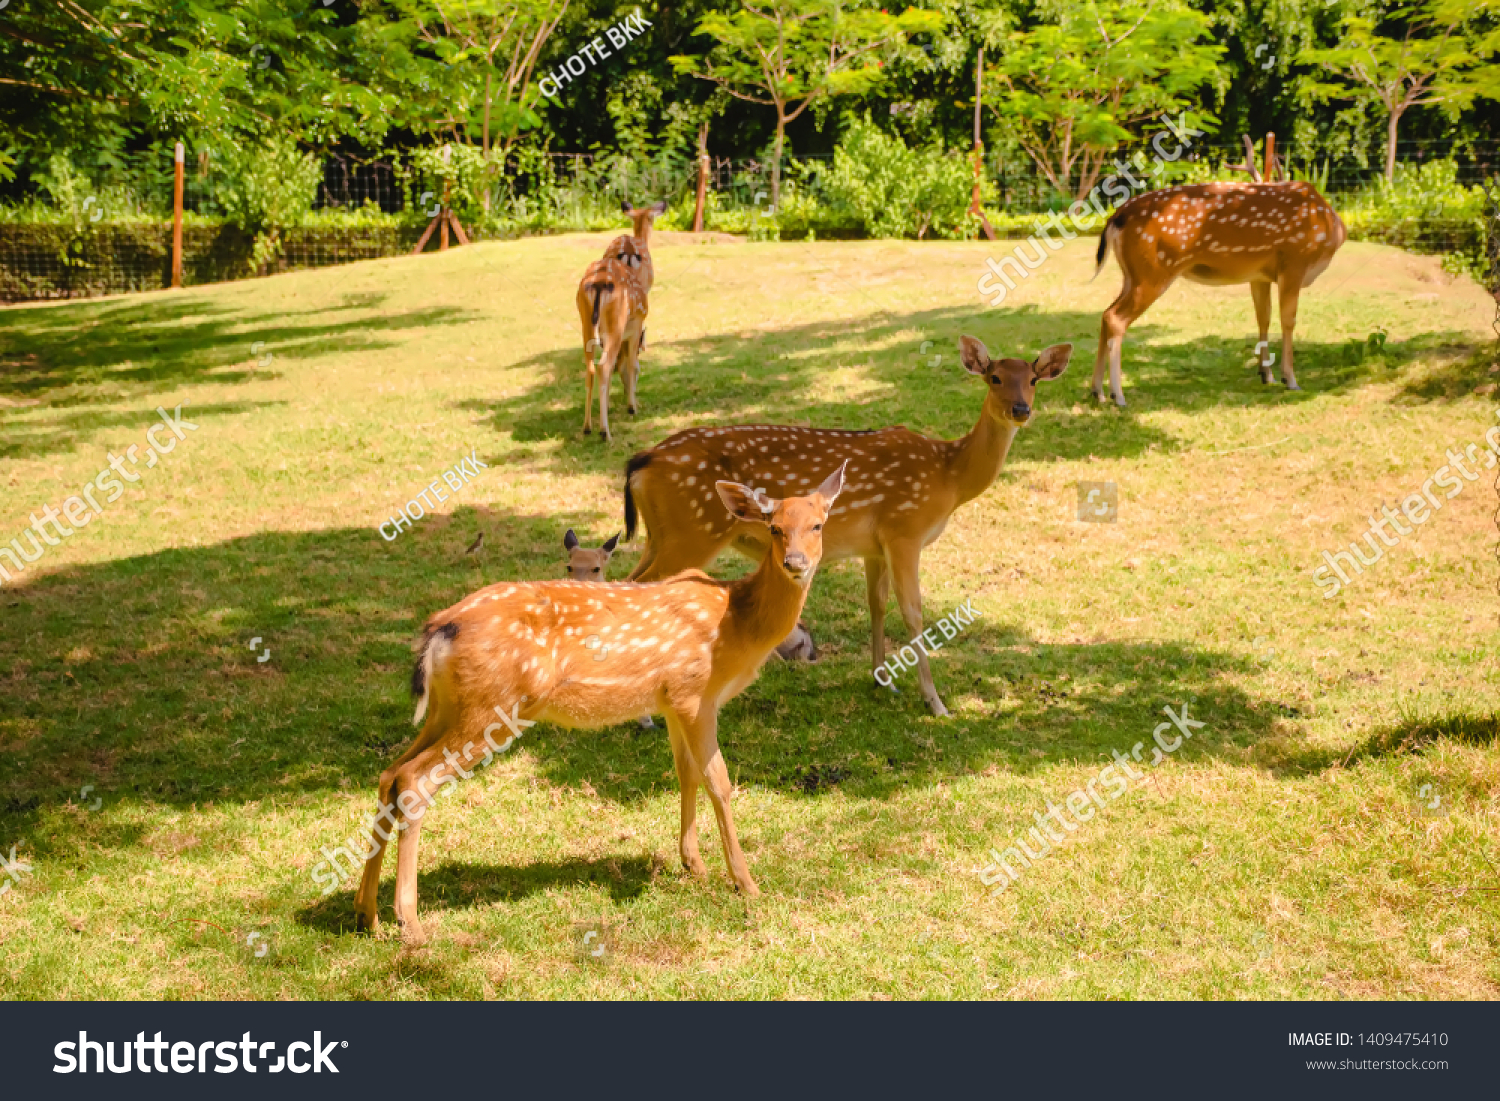 Chital deer. Chital deer or spotted deer standing in nature #1409475410